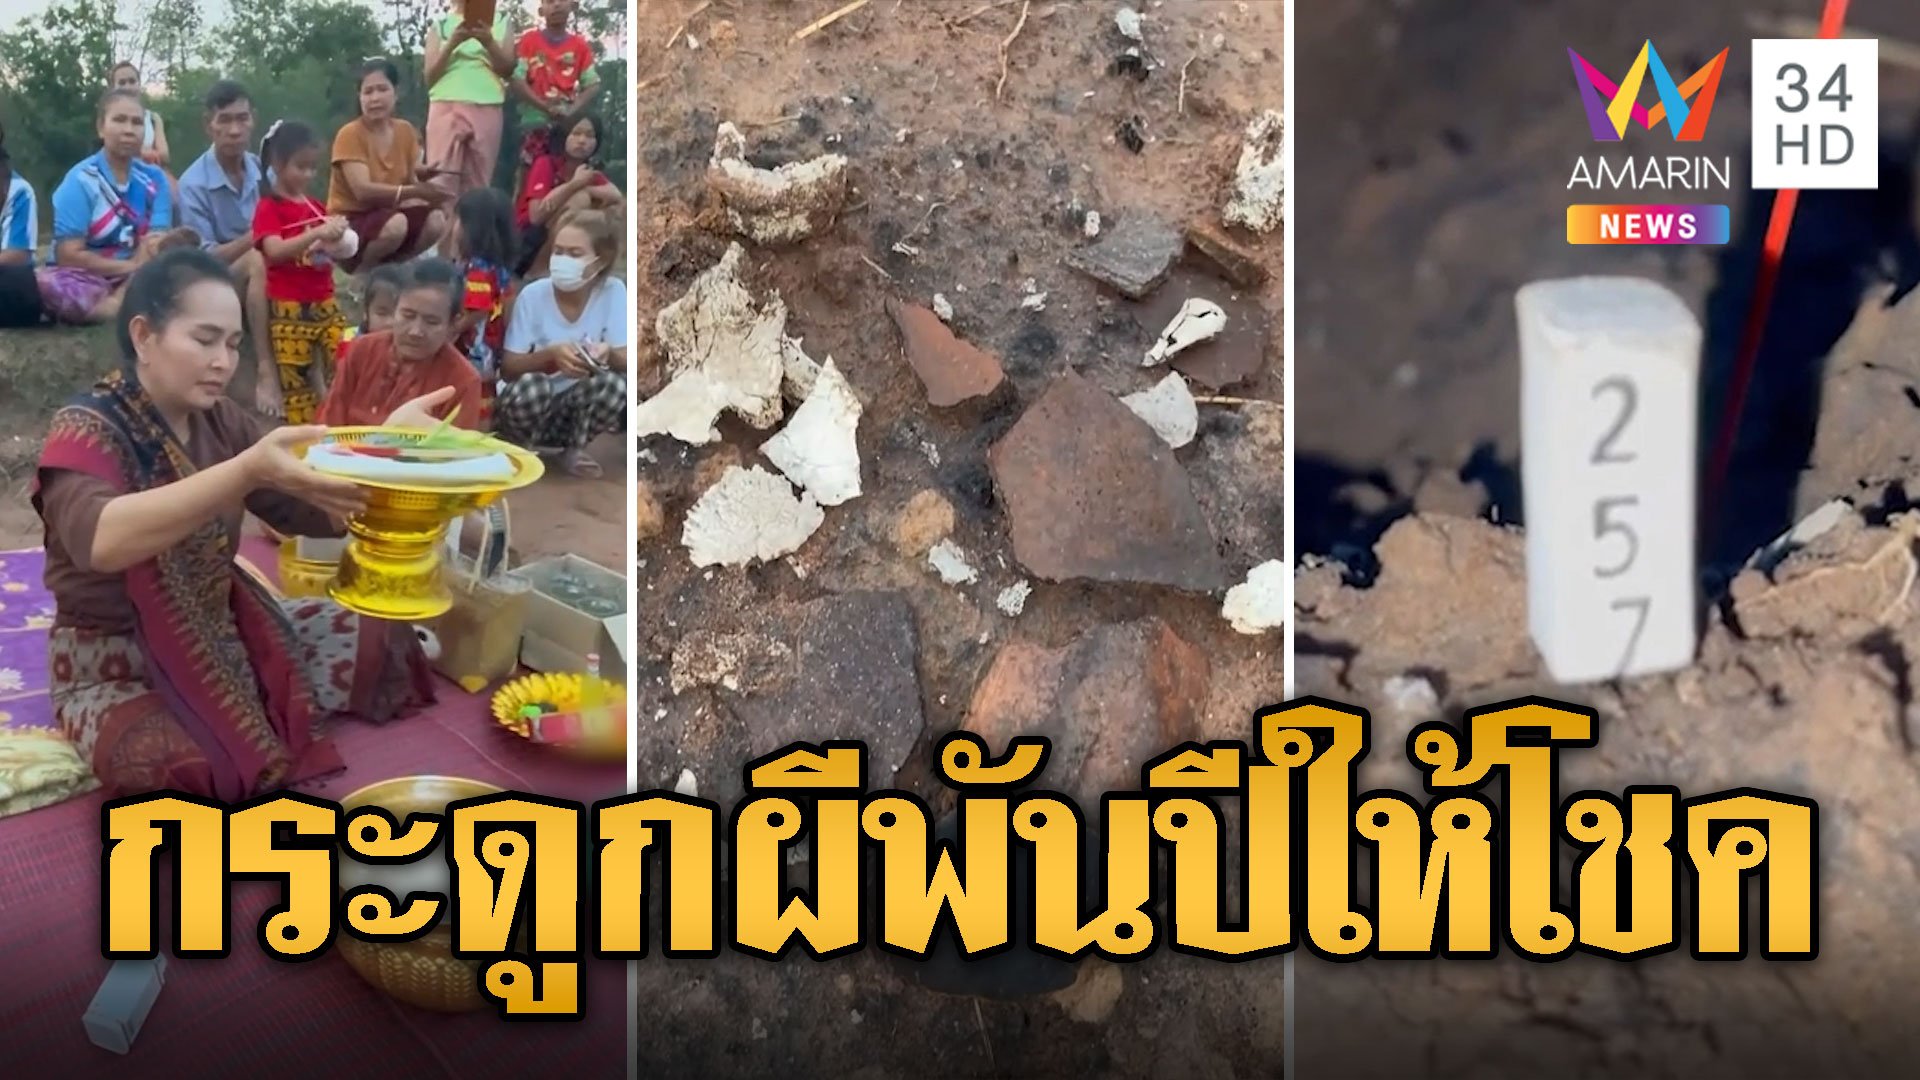 ชาวบ้านแห่ขอโชค กระดูกผีพันปี เจอดีภาพถ่ายติดวิญญาณ | ข่าวอรุณอมรินทร์ | 16 พ.ค. 67 | AMARIN TVHD34